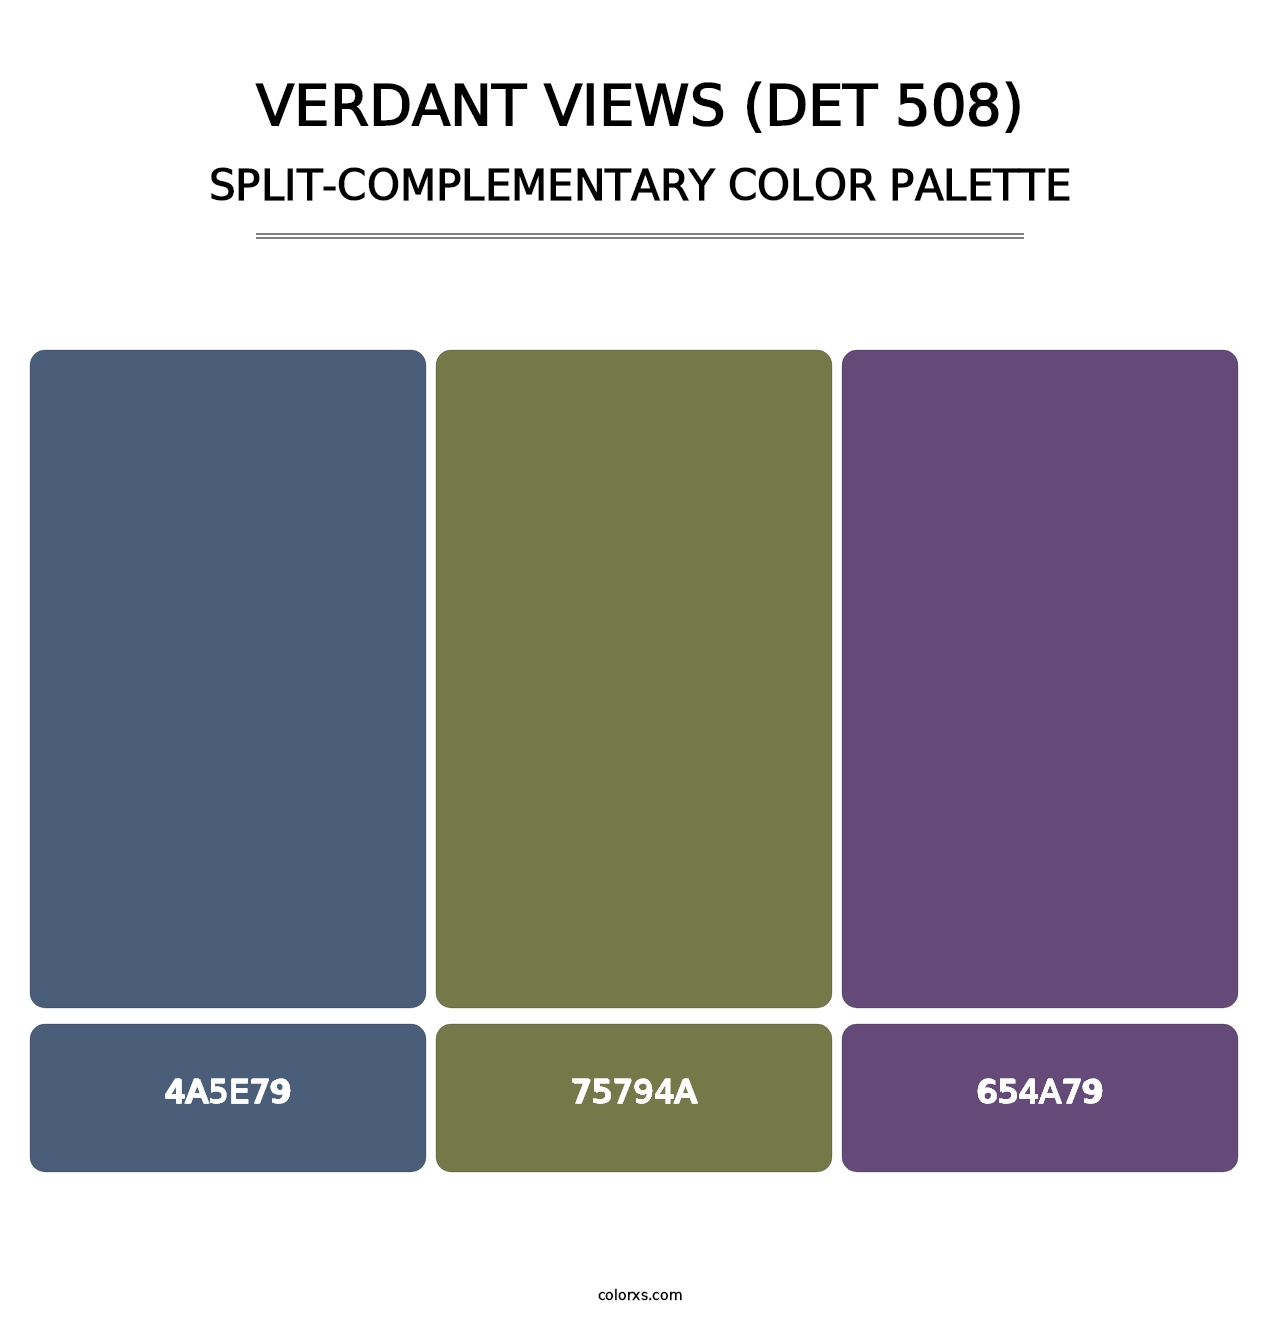 Verdant Views (DET 508) - Split-Complementary Color Palette